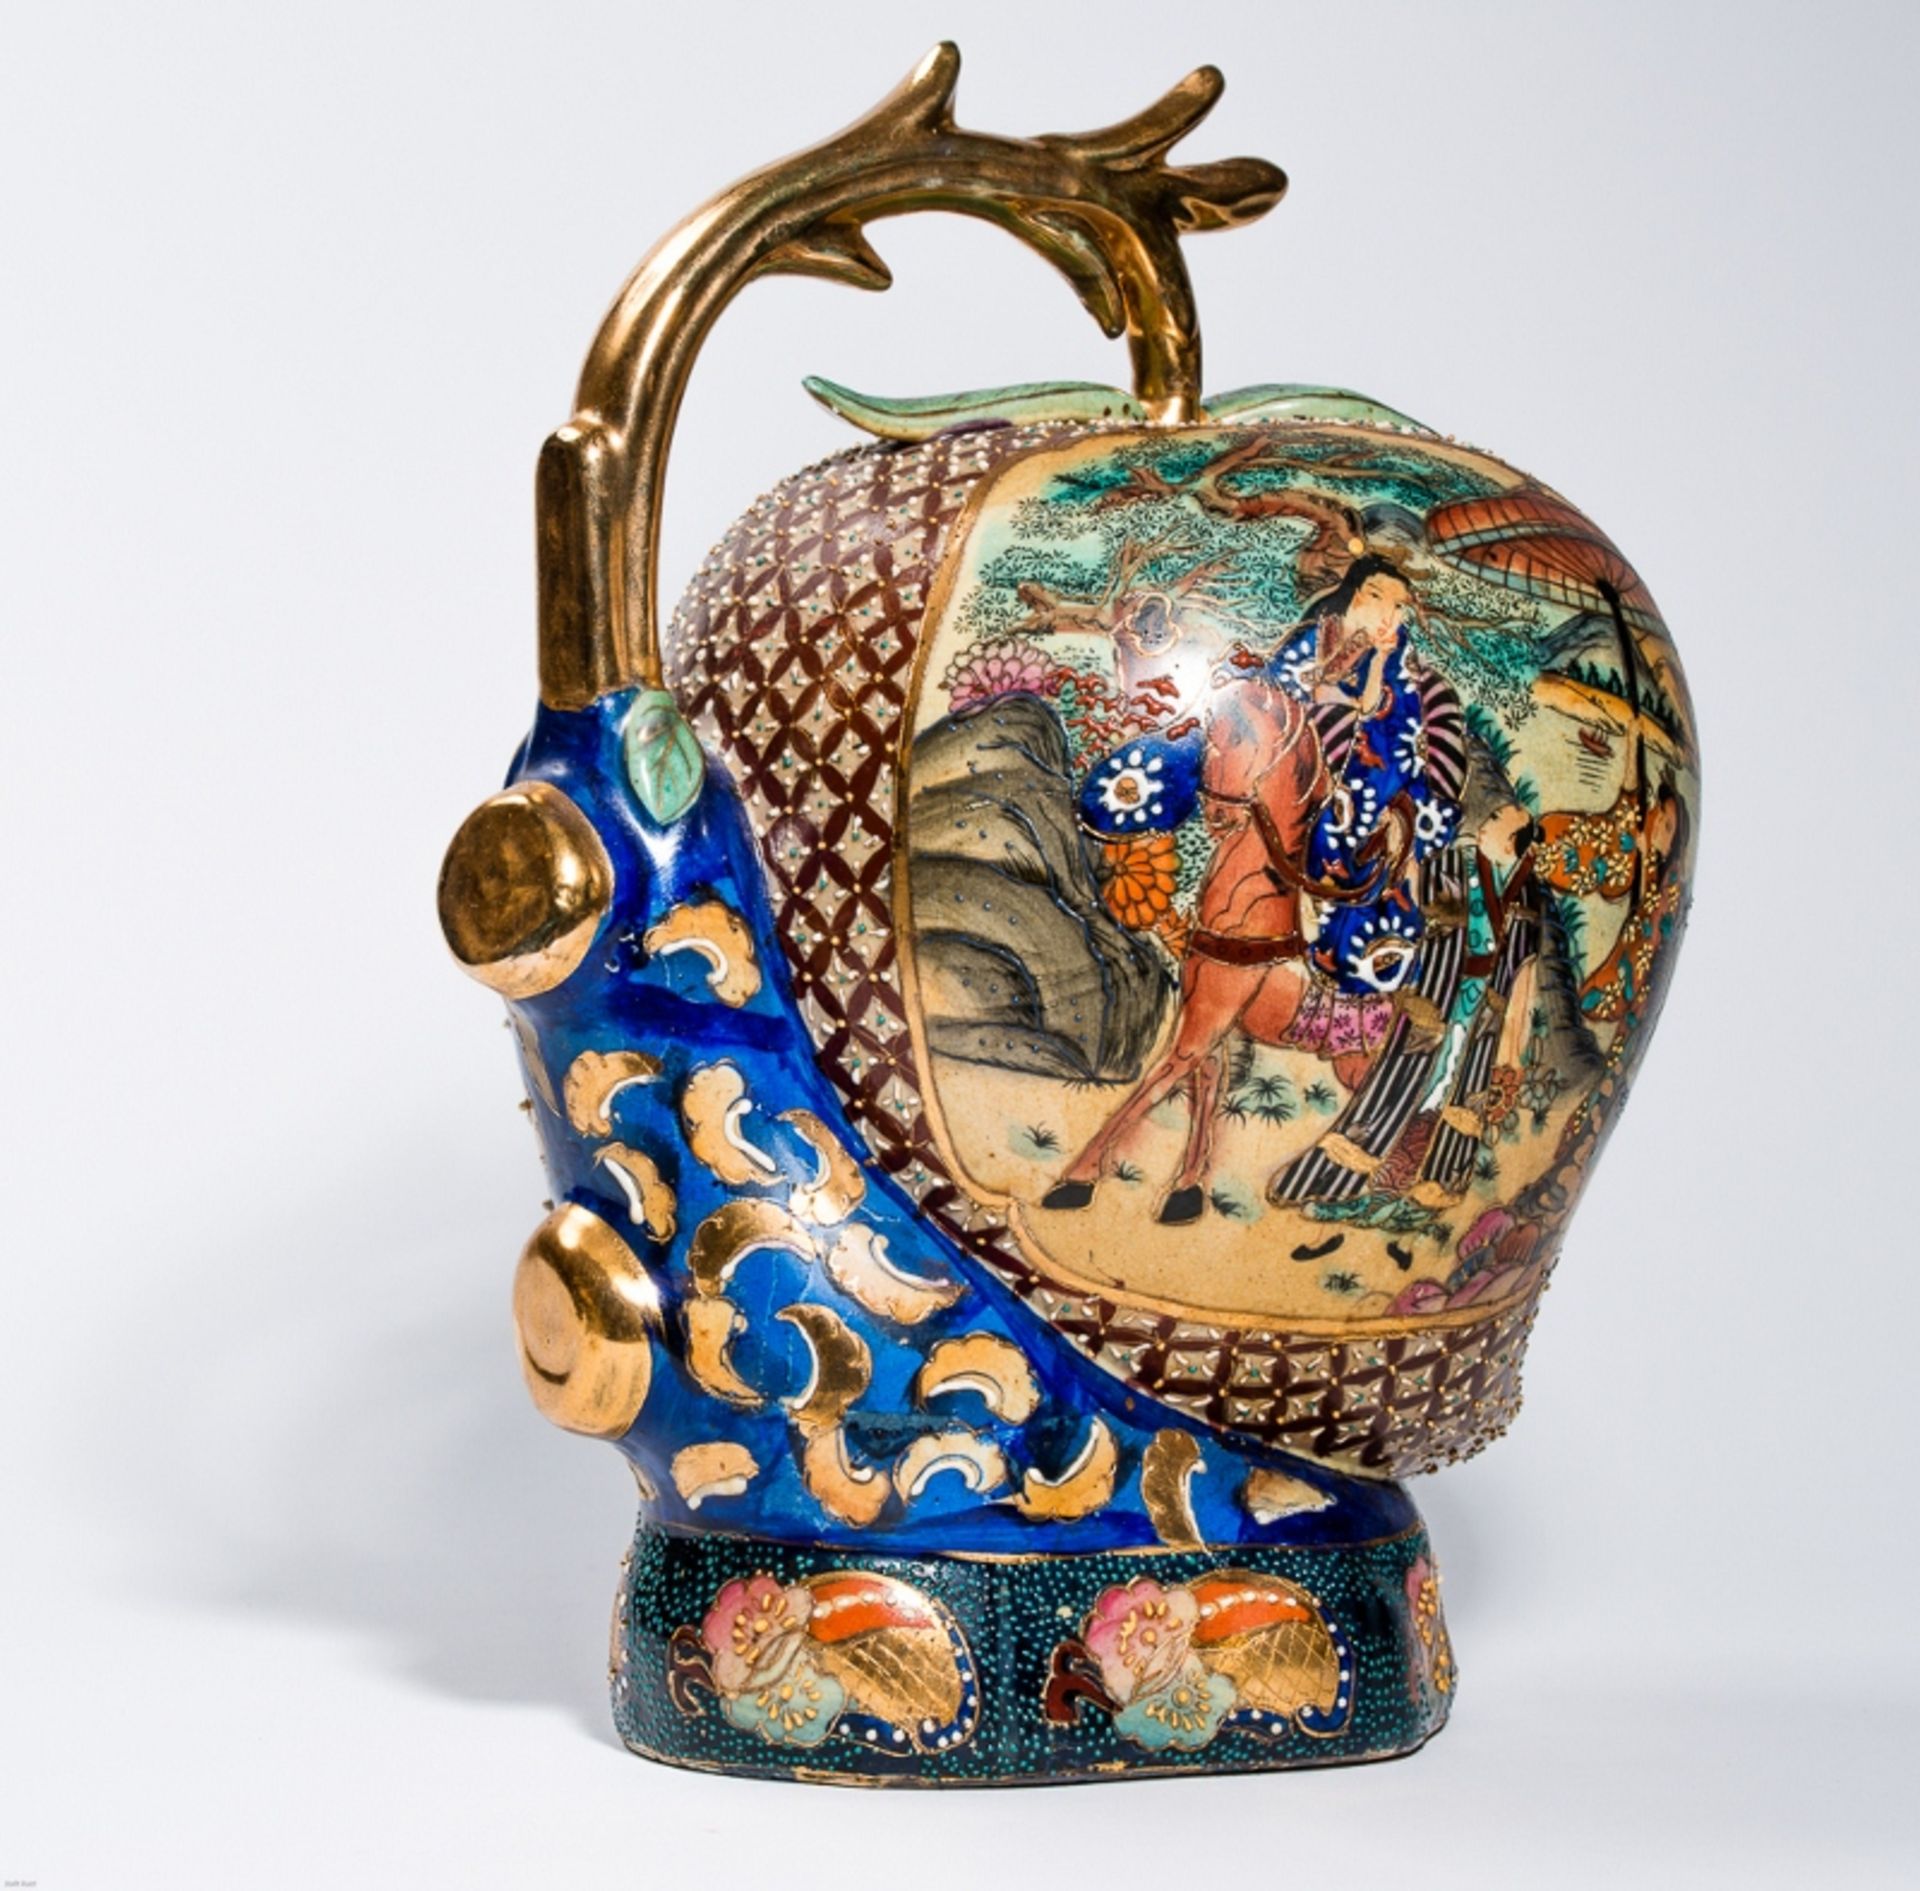 GROSSER LANGLEBENS-PFIRSICH MIT GOTTHEIT
In der Art der japan. Satsuma-Keramik mit Gold. ChinaEine - Bild 5 aus 8